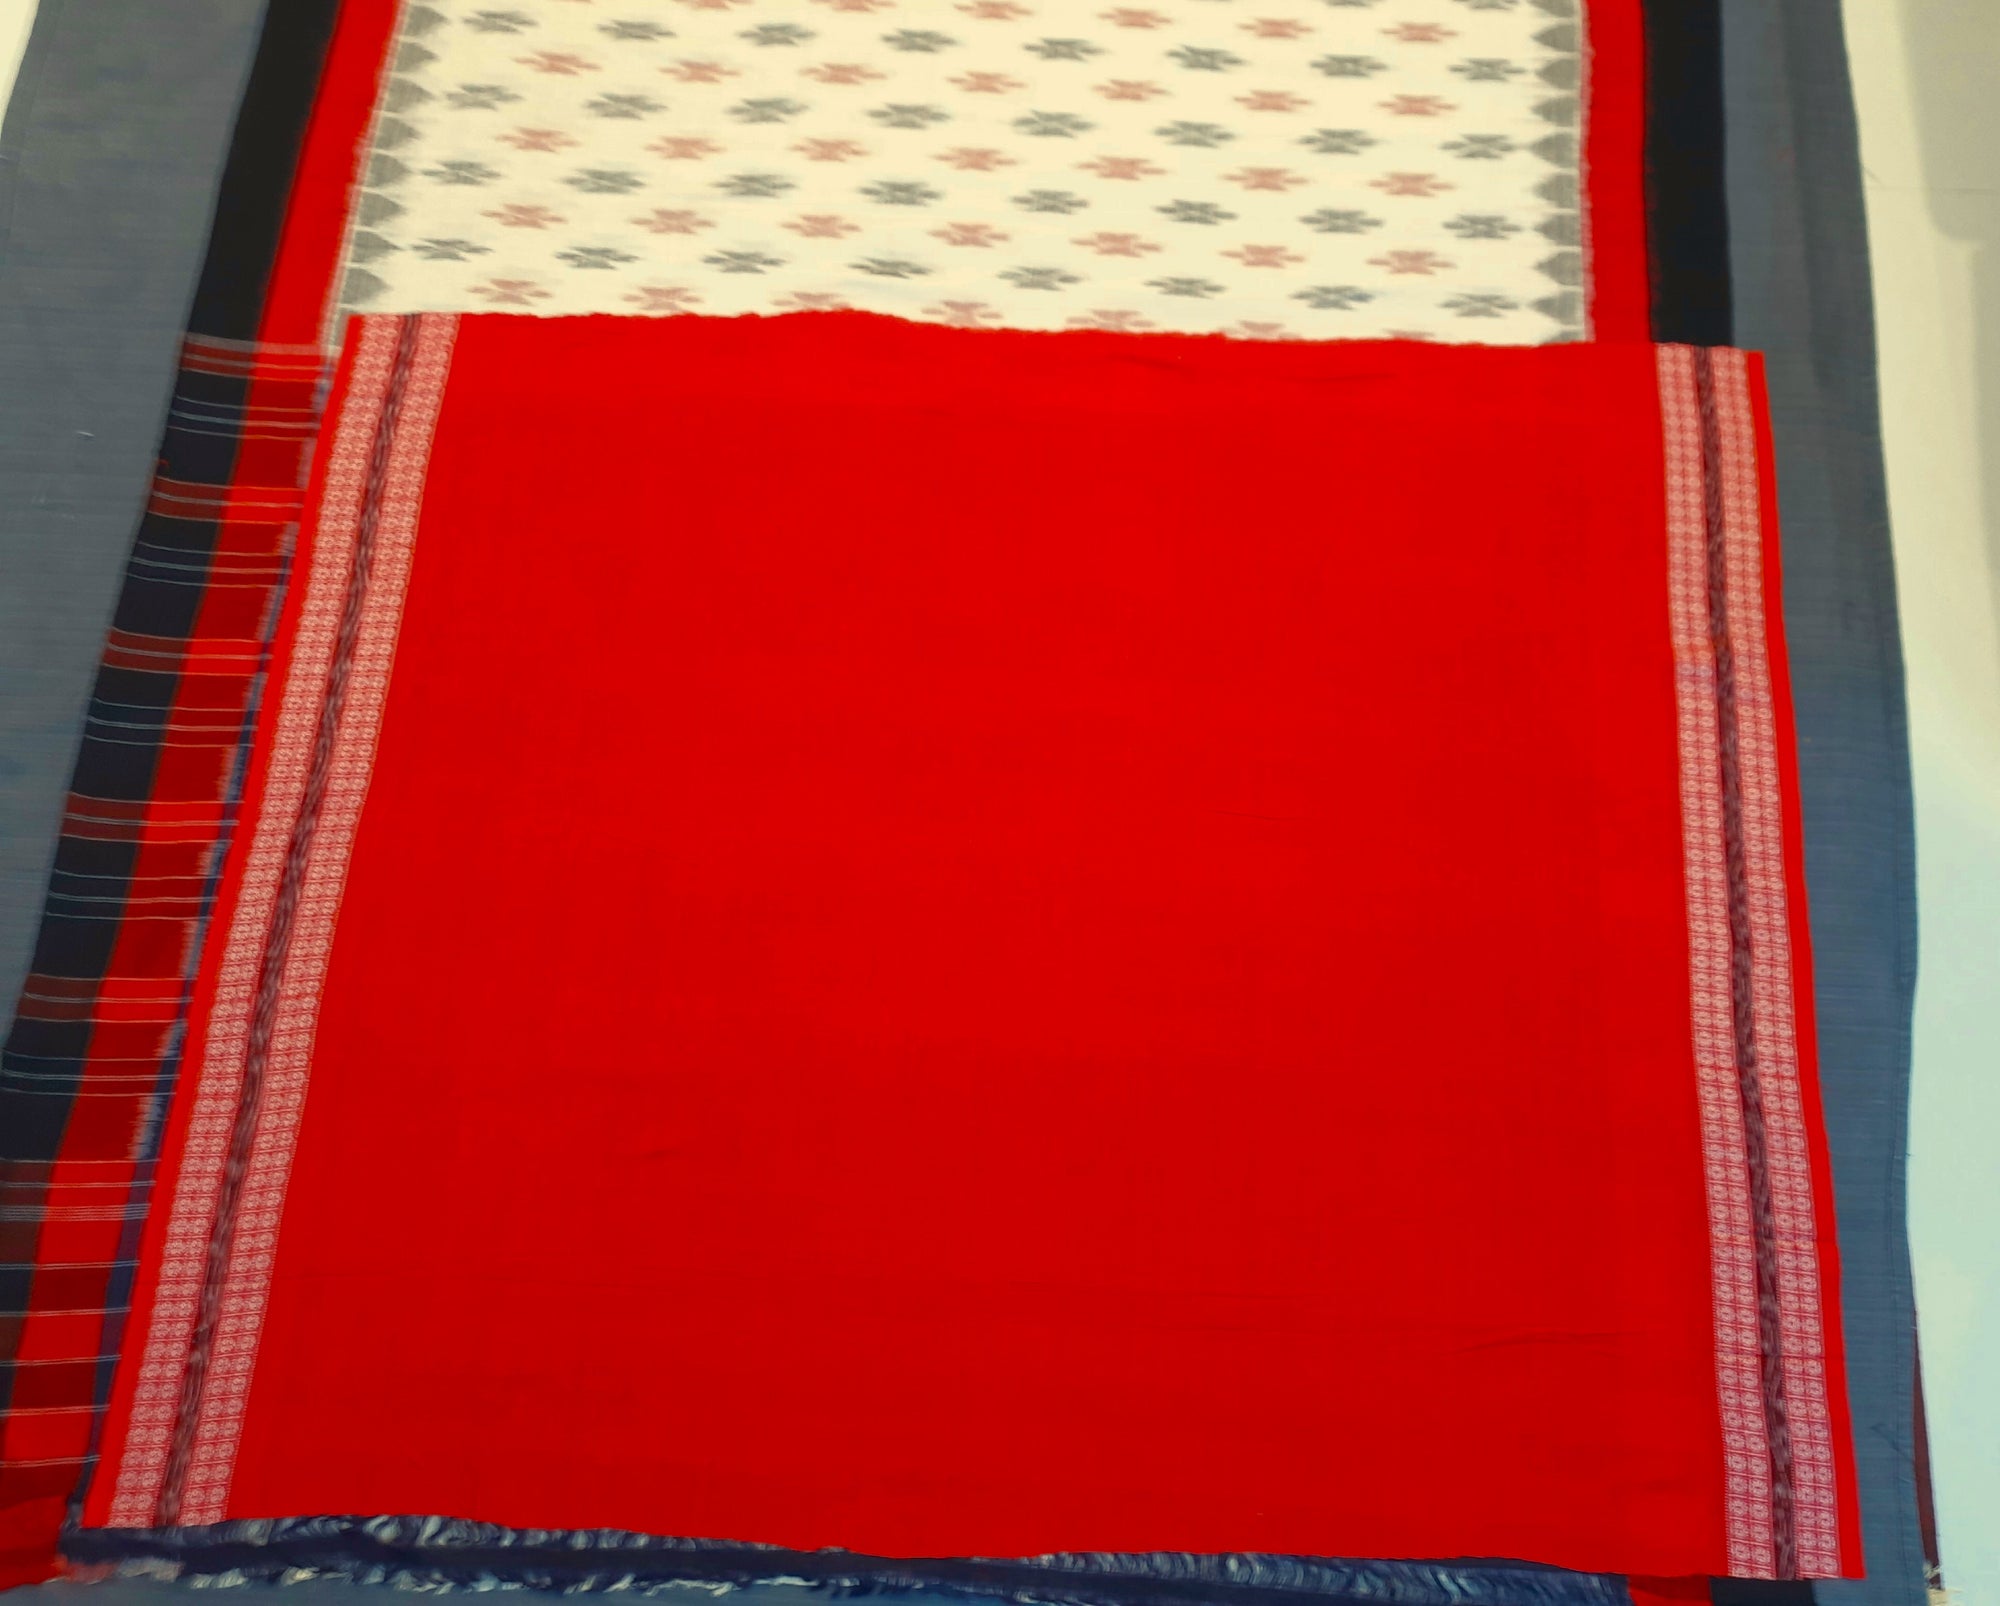 Offwhite Cotton Odisha Ikat saree  with mix match cotton ikat blouse